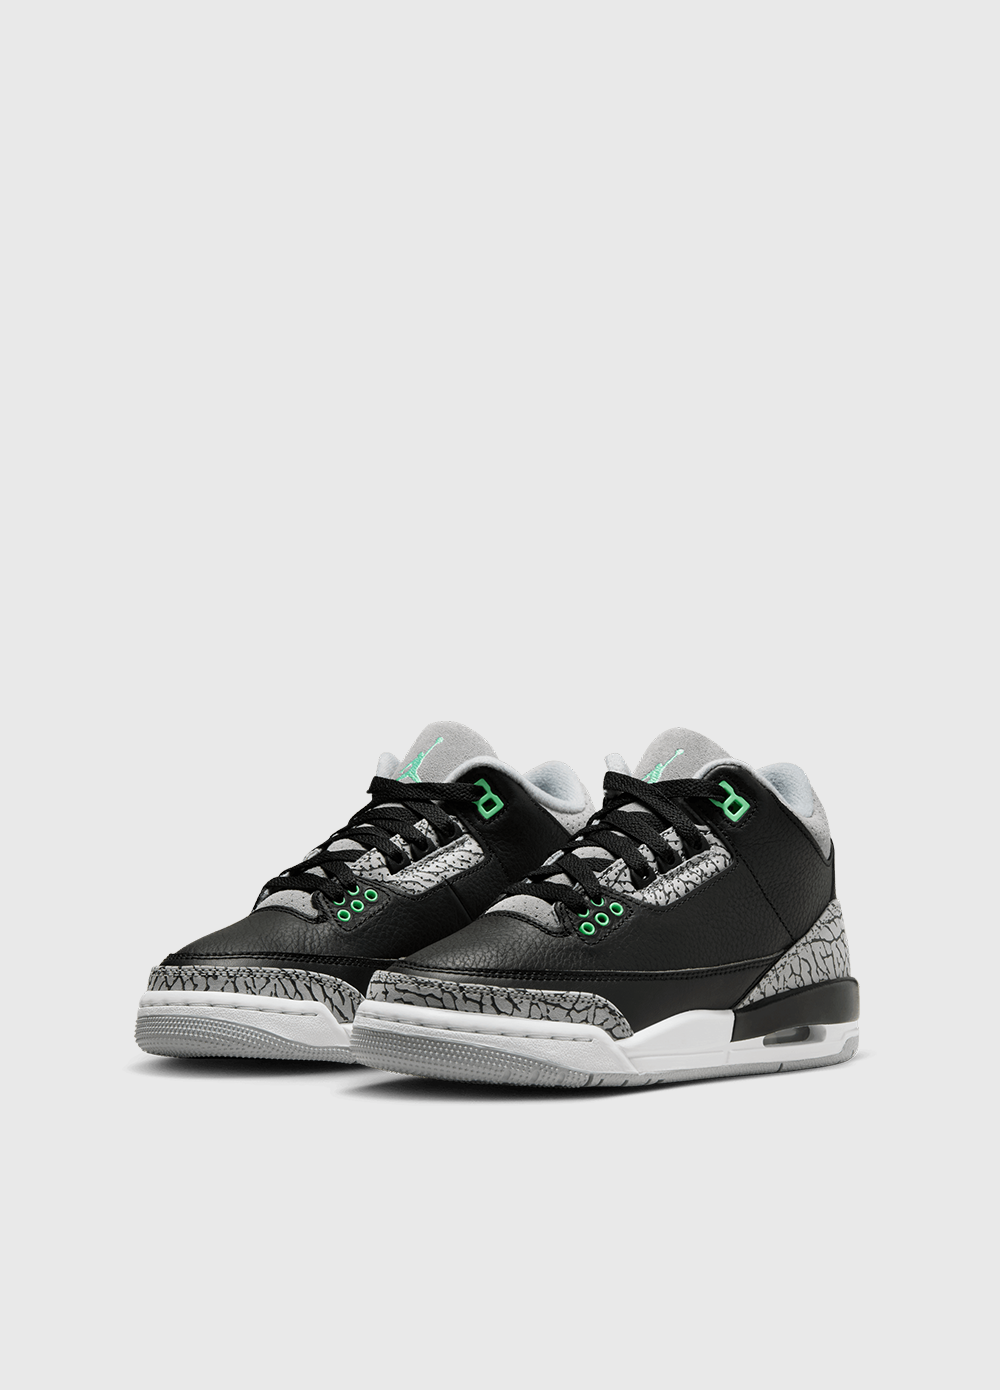 Air Jordan 3 Retro 'Green Glow' Sneakers (GS)